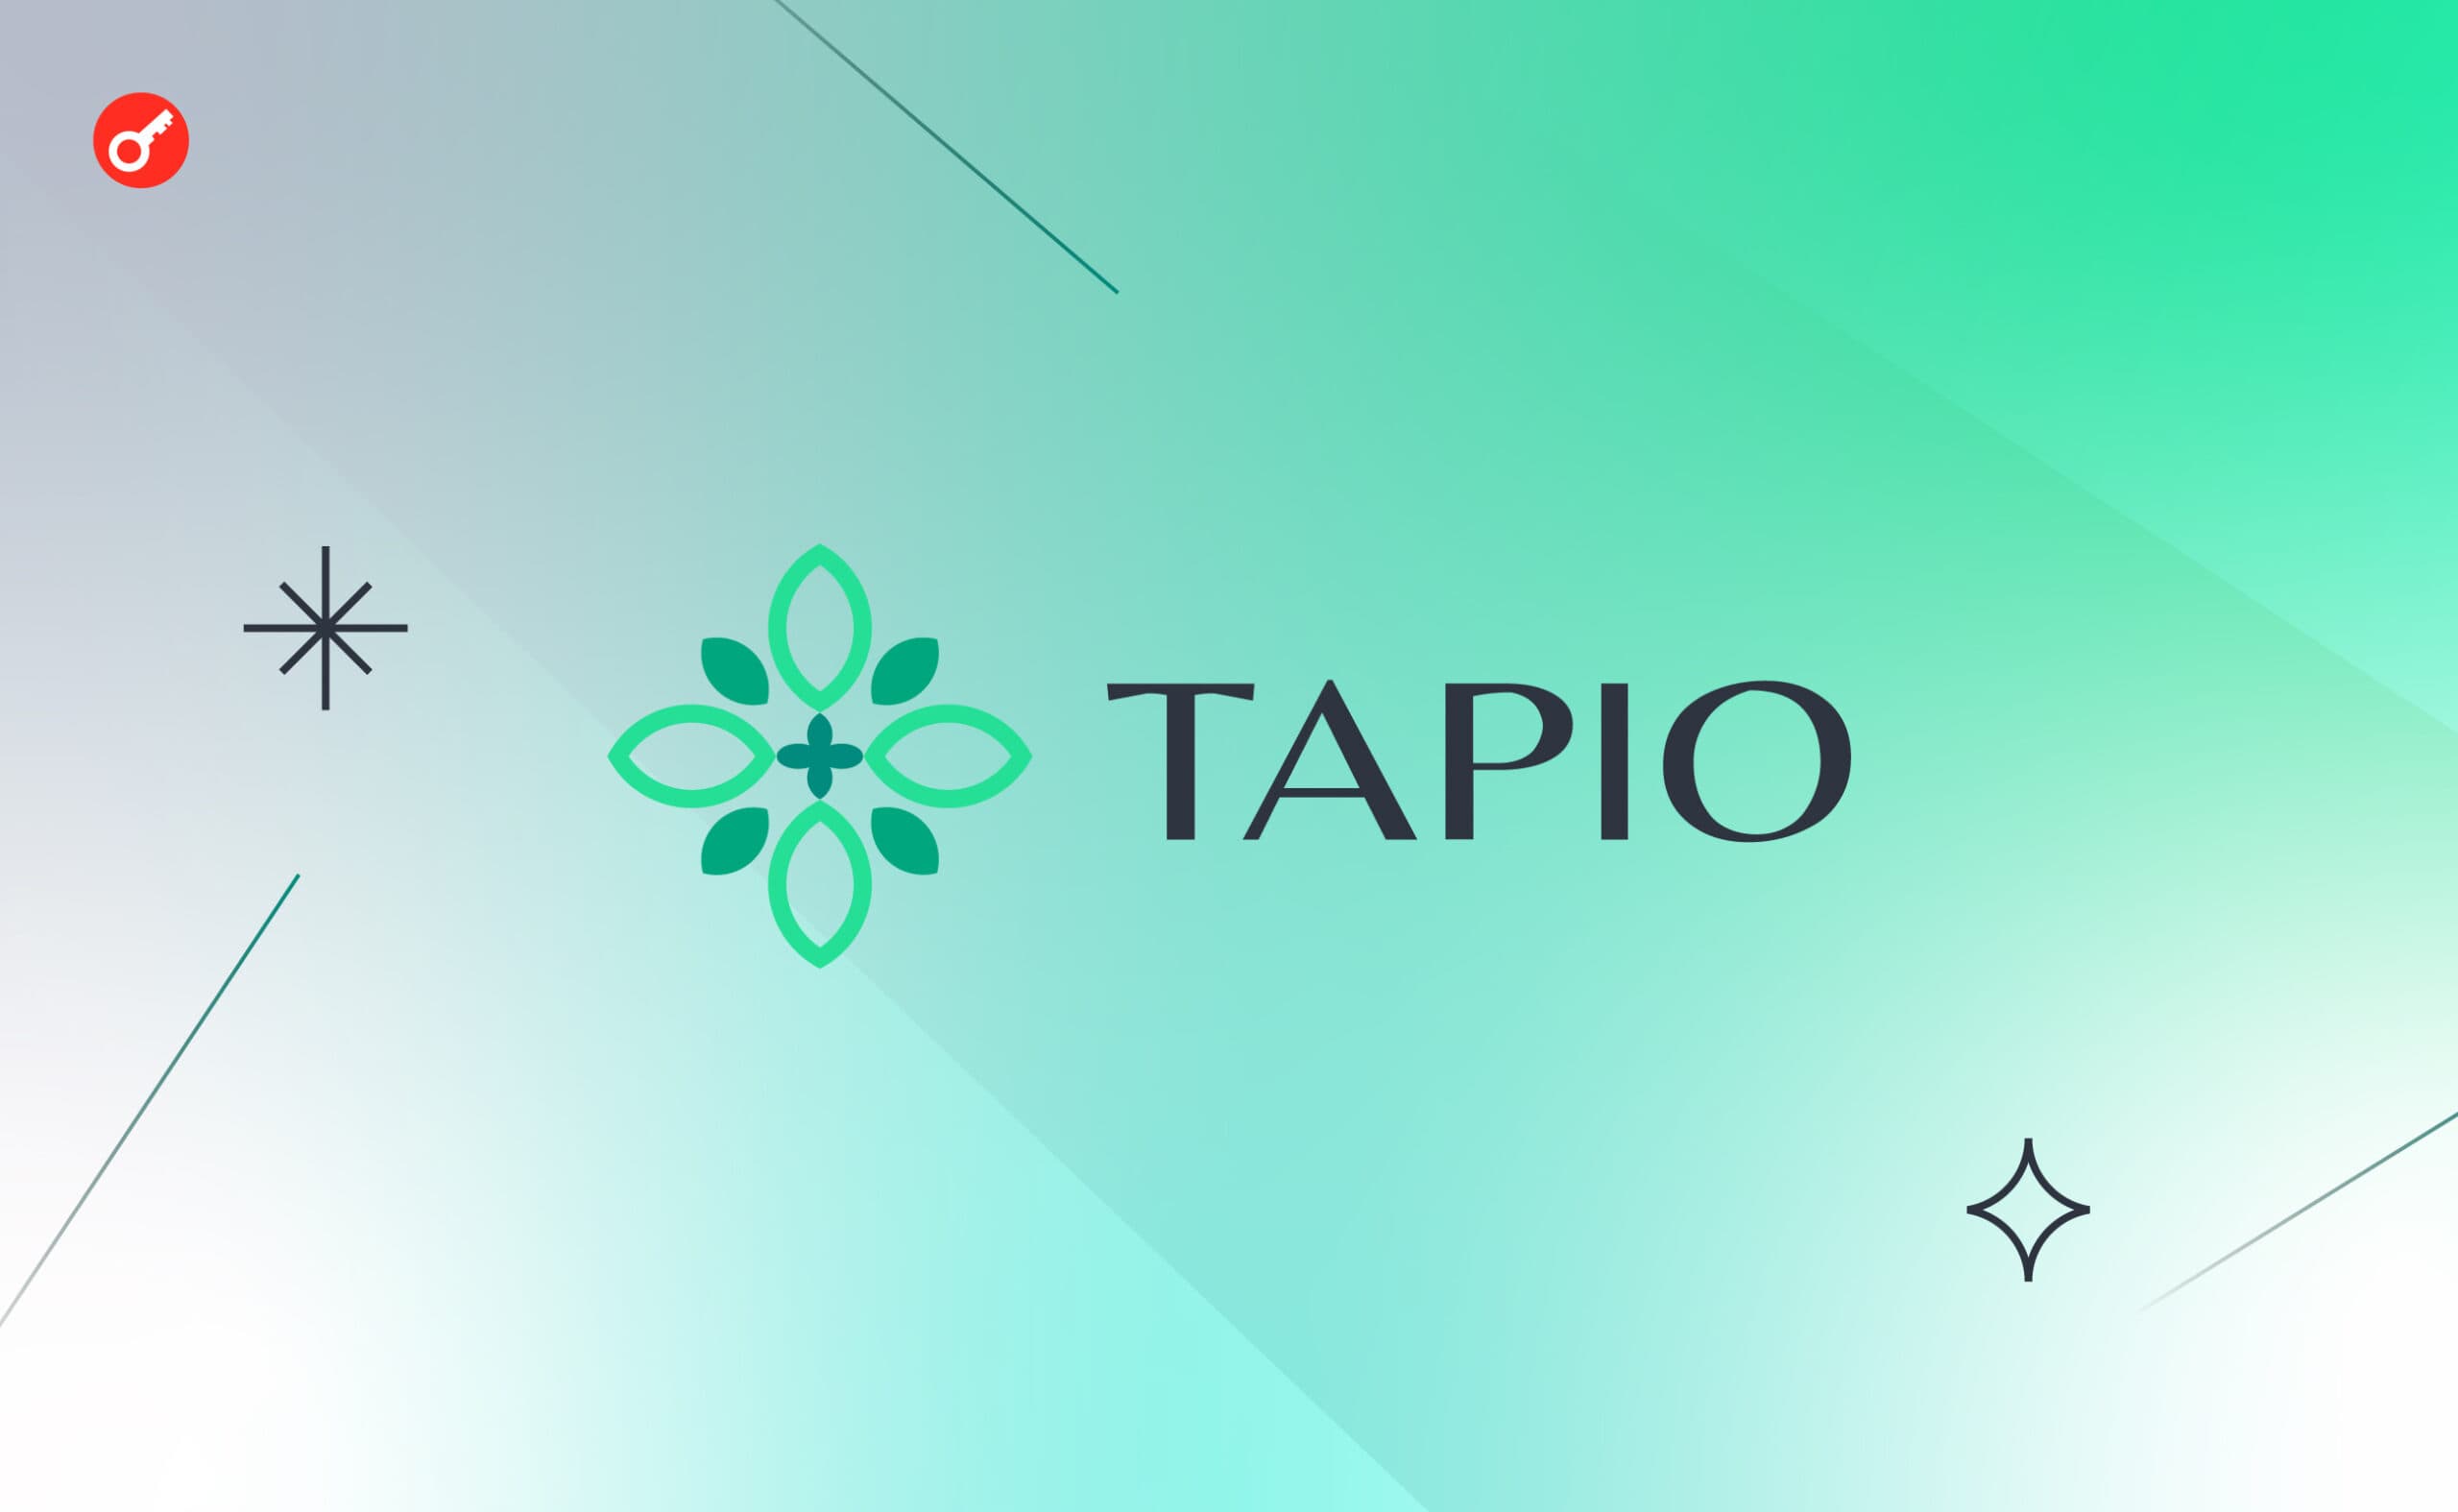 Tapio Finance: беремо участь у проєкті на ранній стадії. Головний колаж статті.